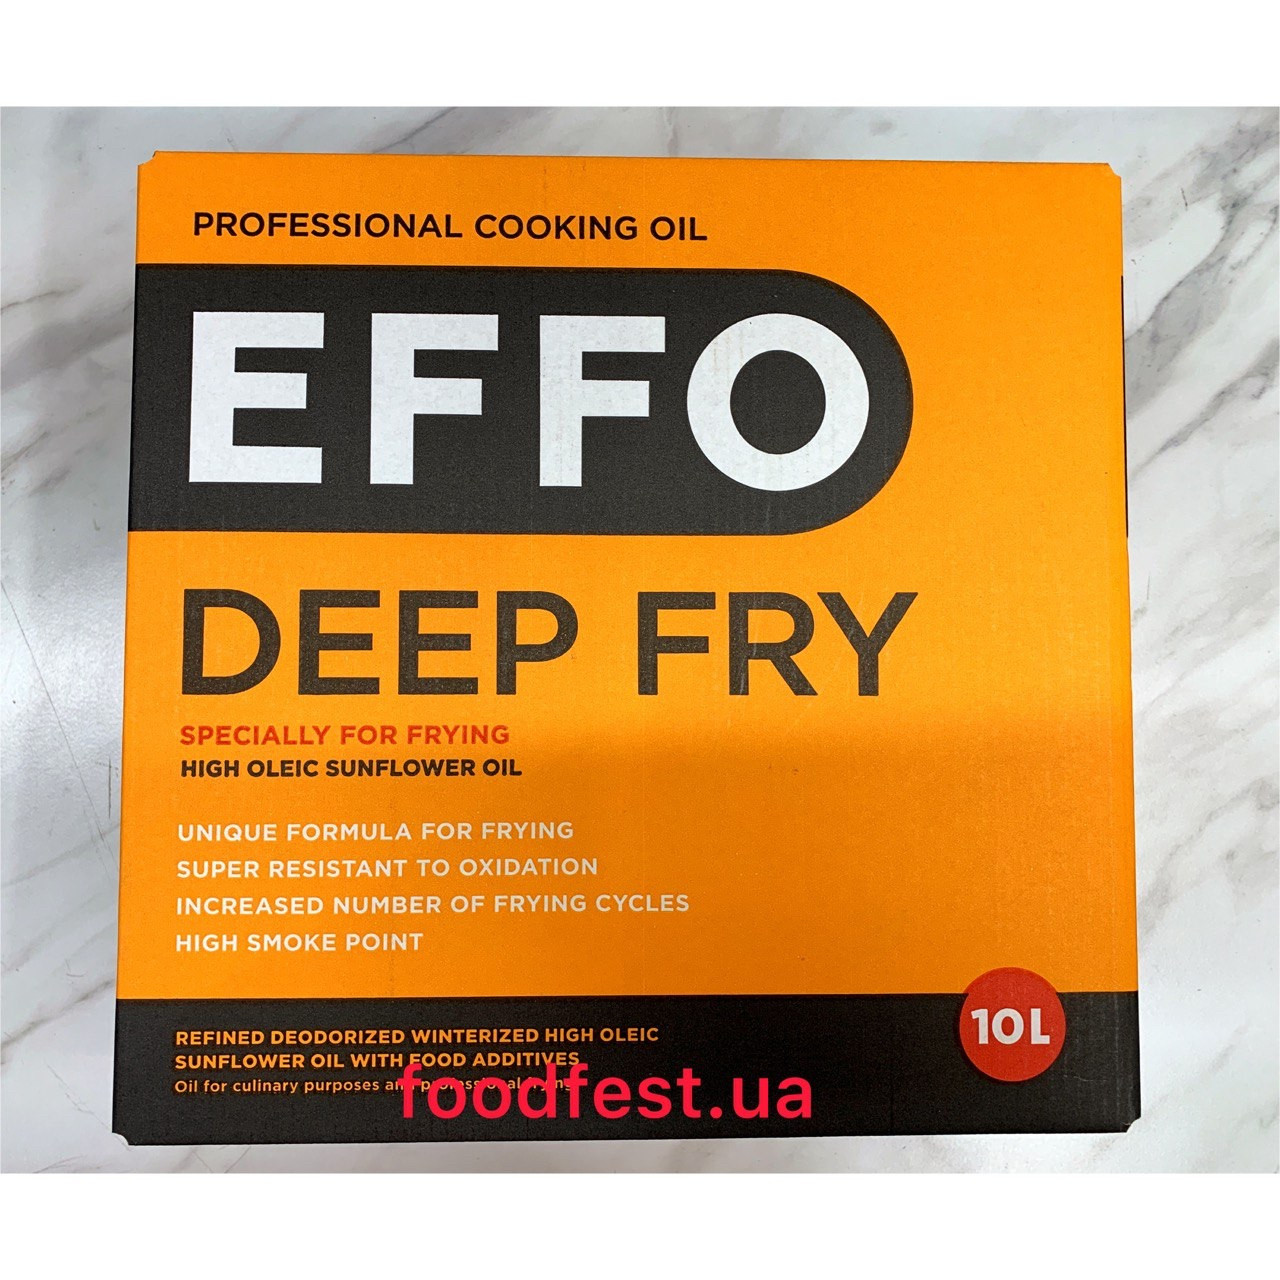 Професійна кулінарна олія для фритюру EFFO DEEP FRY, 10 л